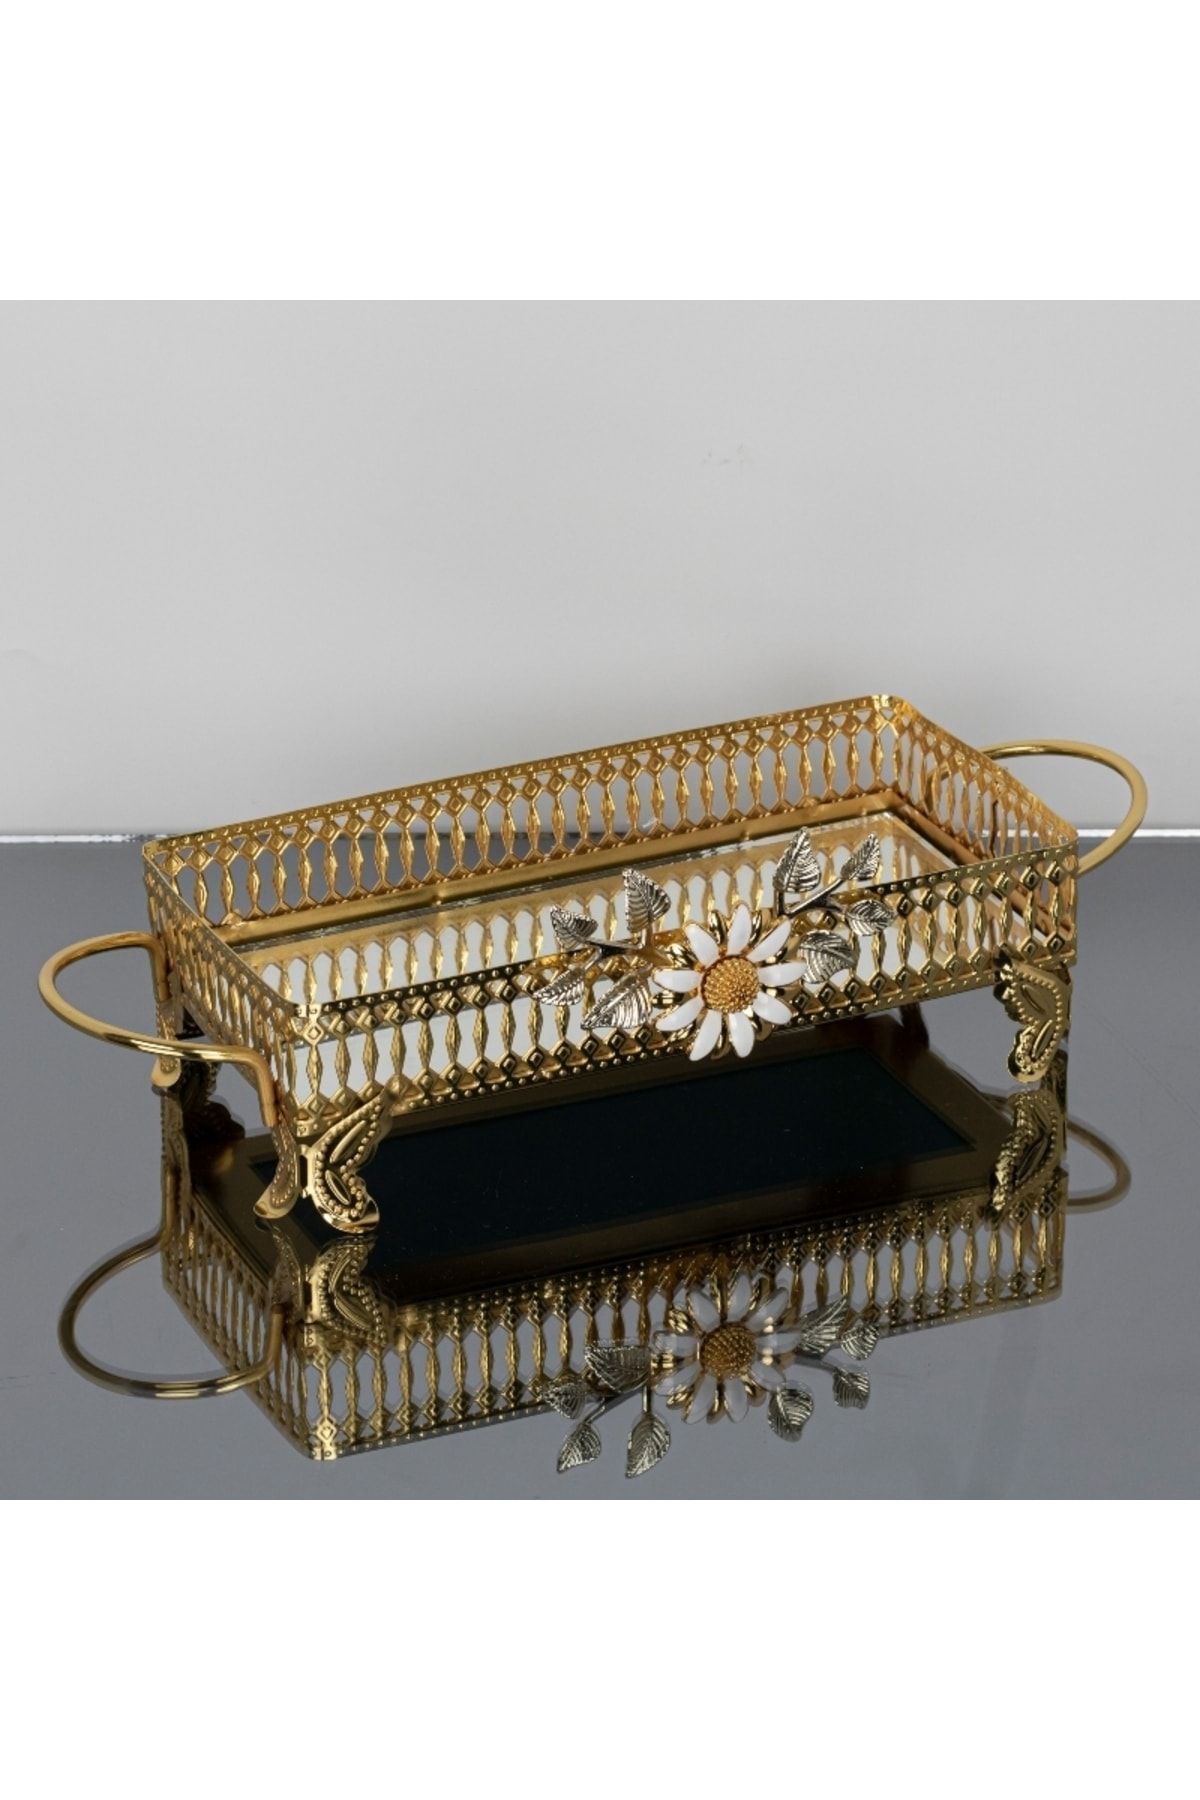 İnova Home Decor Firuze Çiçek Detaylı Gold Aynalı Nişan- Söz Tepsisi - Aynalı Tepsi 26 X 13 Cm - Küçük Boy